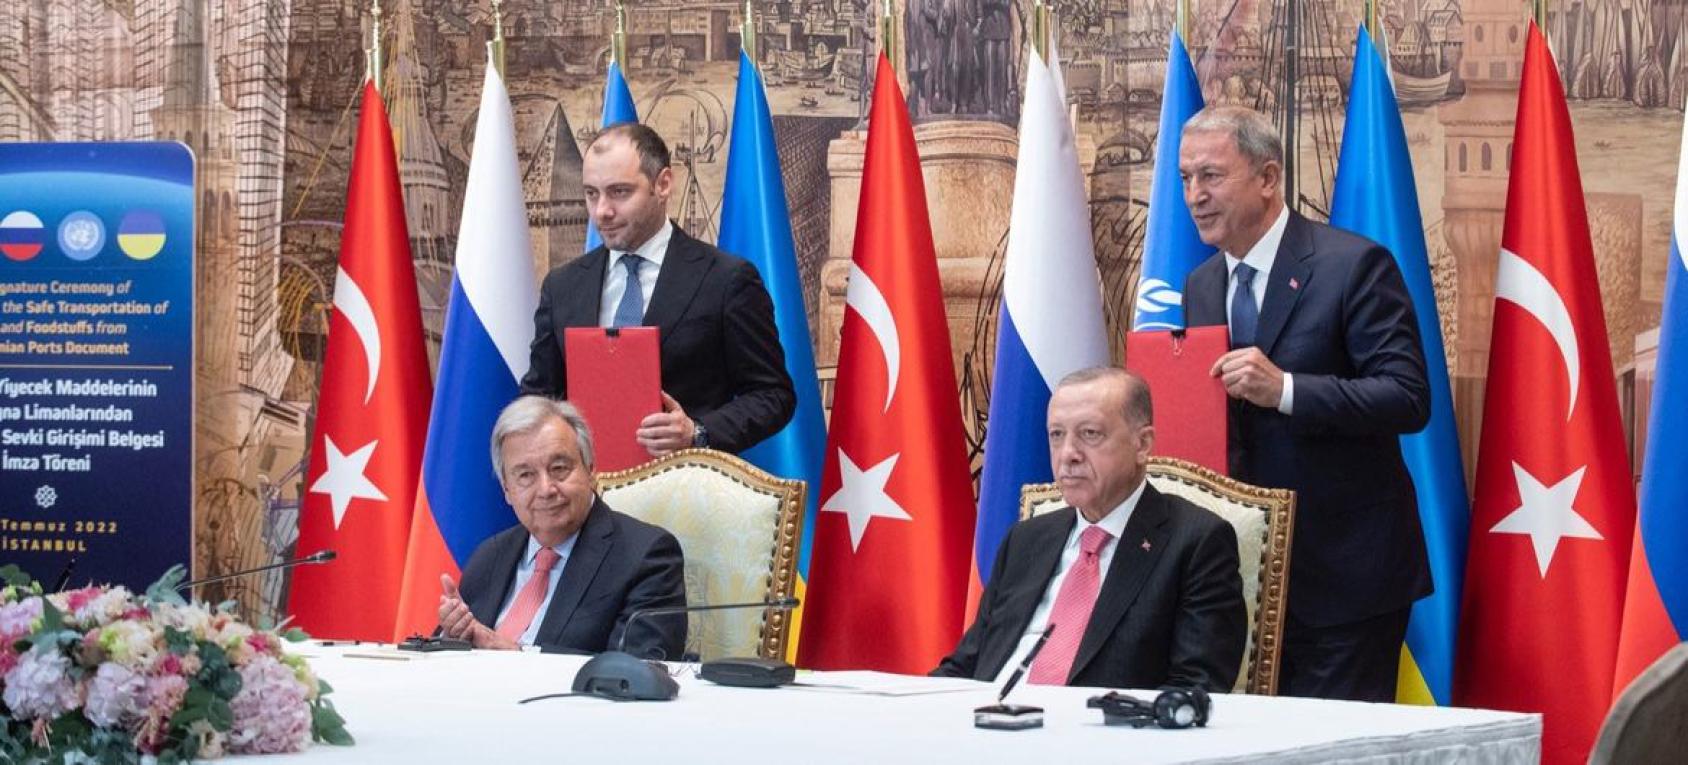 Le Secrétaire général de l'ONU, António Guterres, et le Président turc, Recep Erdoğan, lors de la cérémonie de signature de l'accord  sur l'Initiative céréalière de la mer Noire.